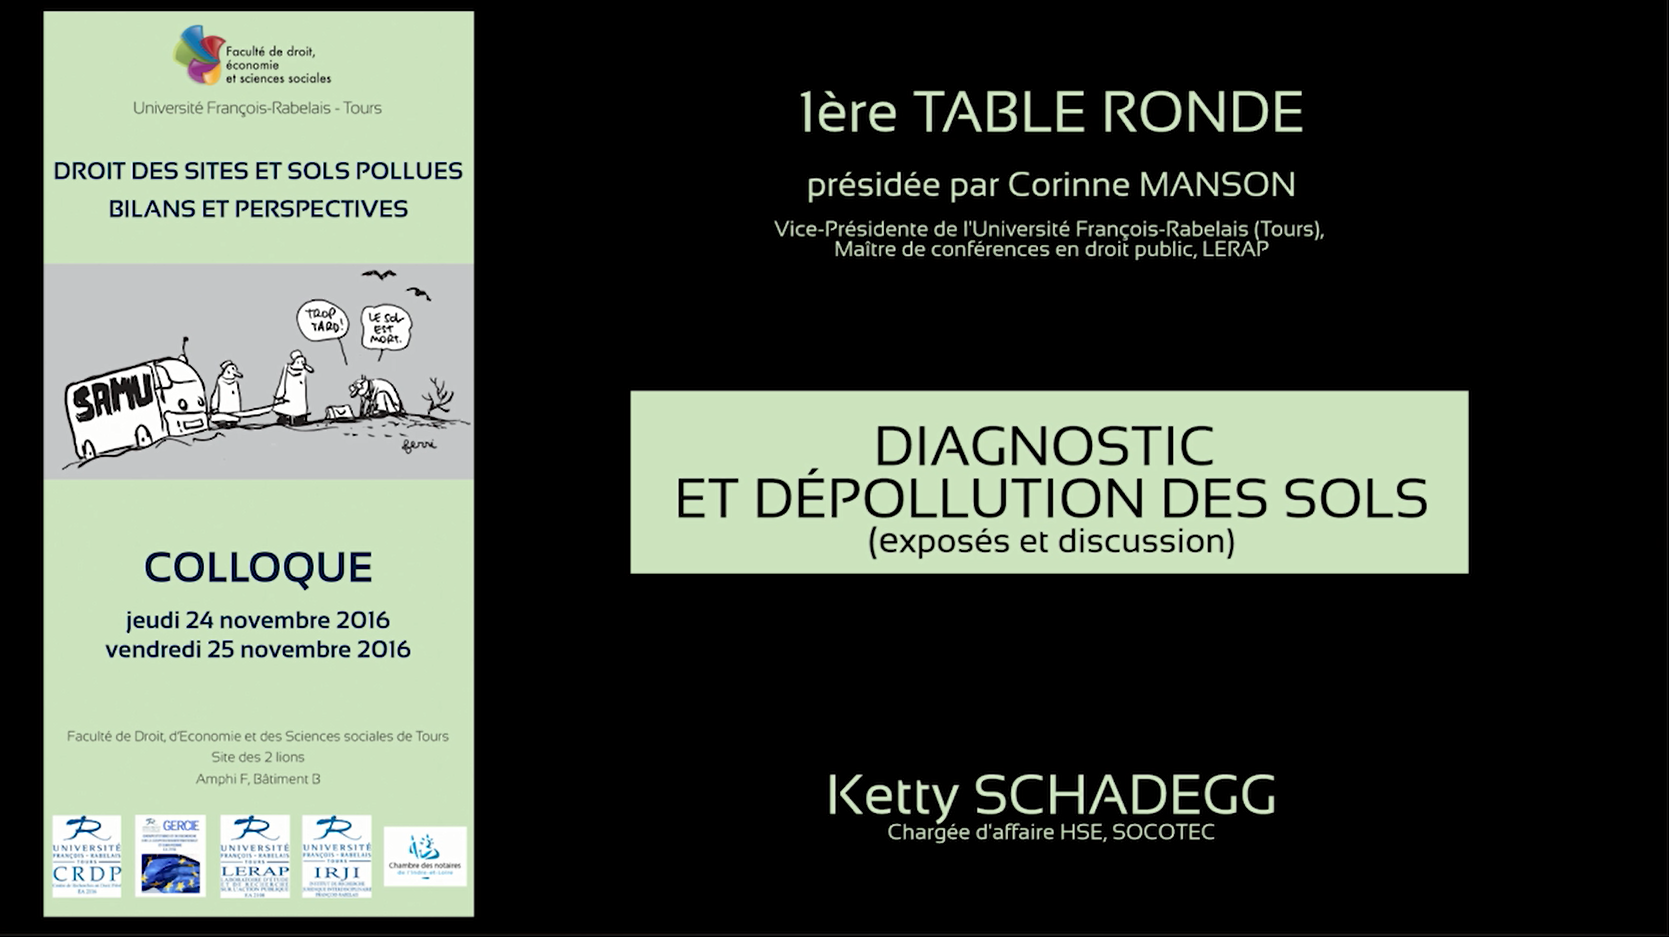 Première table-ronde : Diagnostic et dépollution des sols (exposés et discussion), Ketty Schadegg, chargée d’affaires HSE, SOCOTEC.